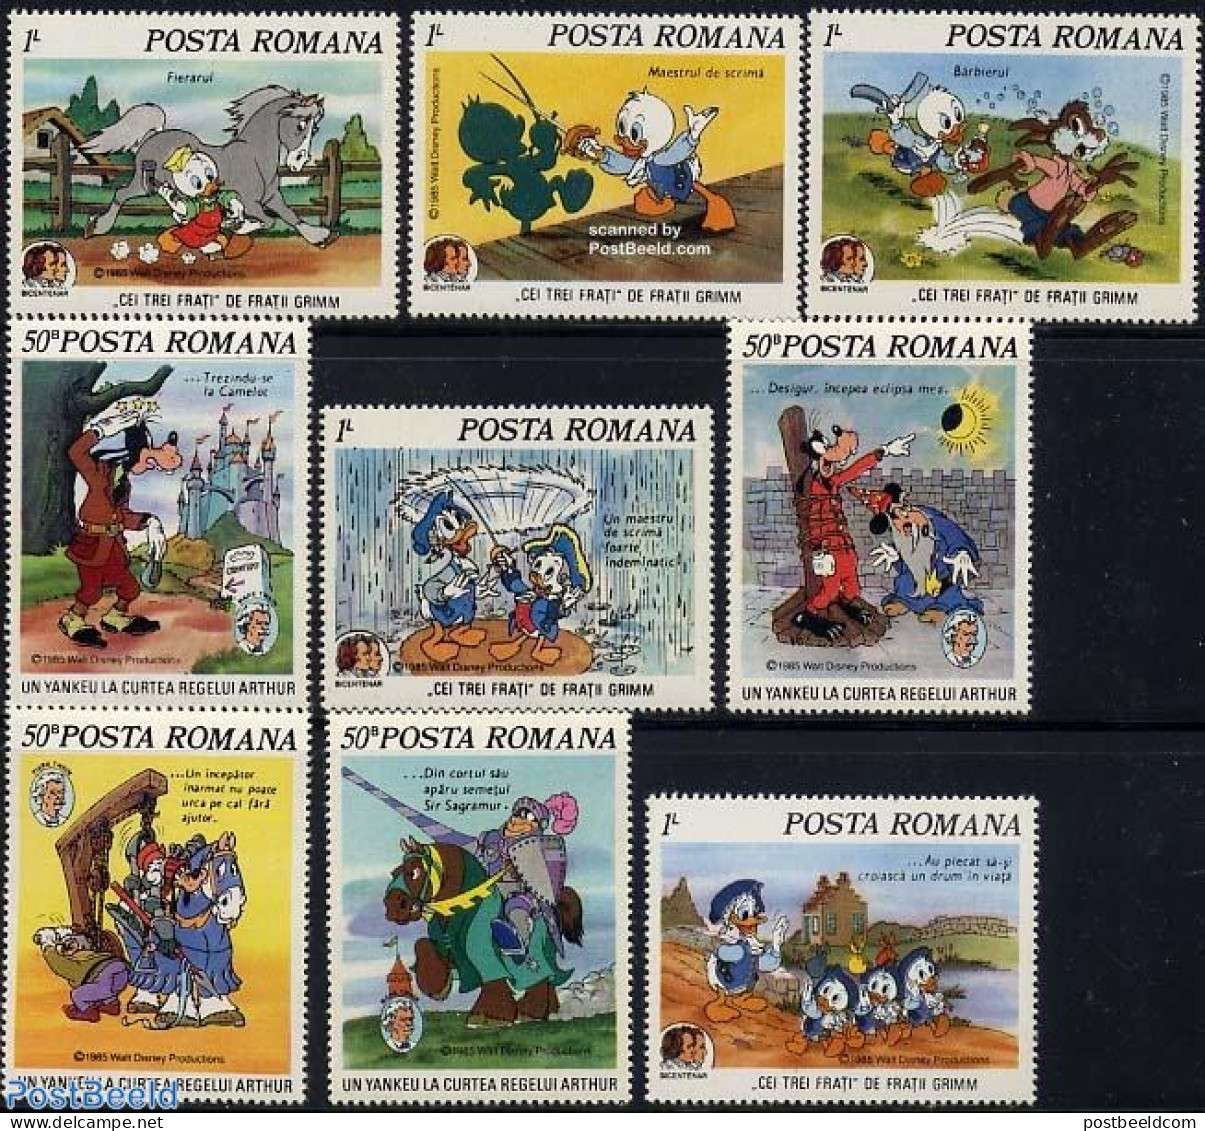 Romania 1985 Mark Twain, Disney 9v, Mint NH, History - Nature - Knights - Horses - Art - Authors - Disney - Unused Stamps